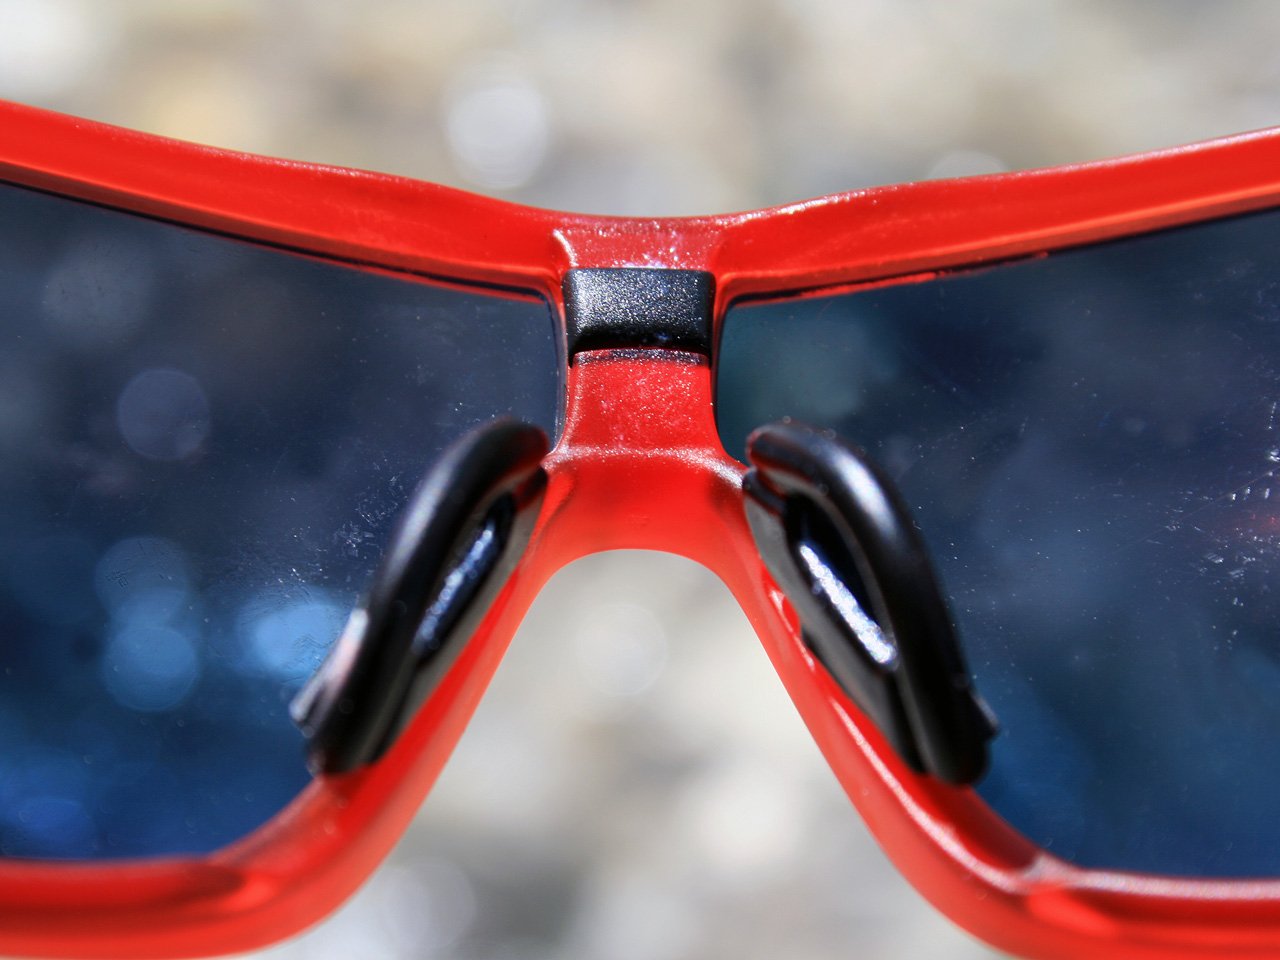 Testbericht – adidas Sport eyewear tycane pro outdoor: Die justierbaren Nasenflügel im Vordergrund und dahinter untern einem schwarzen Kunstoffeinsatz versteckt, die Nut für die Befestigung der optischen Ausgleichshilfe.(©airFreshing.com)